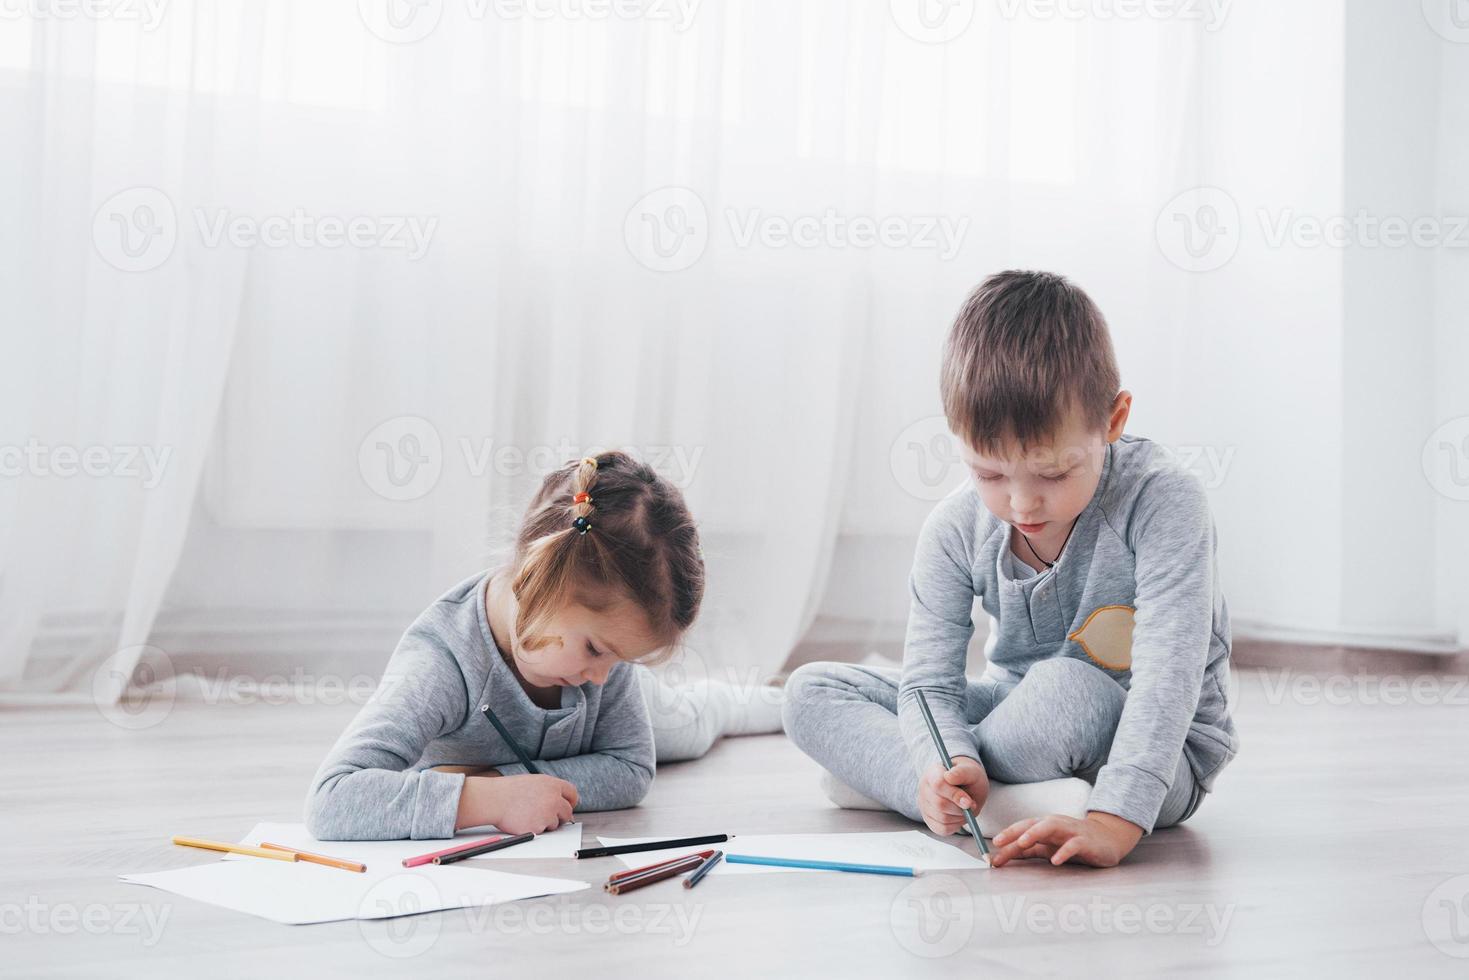 crianças deitam-se no chão de pijama e desenham a lápis. criança fofa pintando a lápis foto